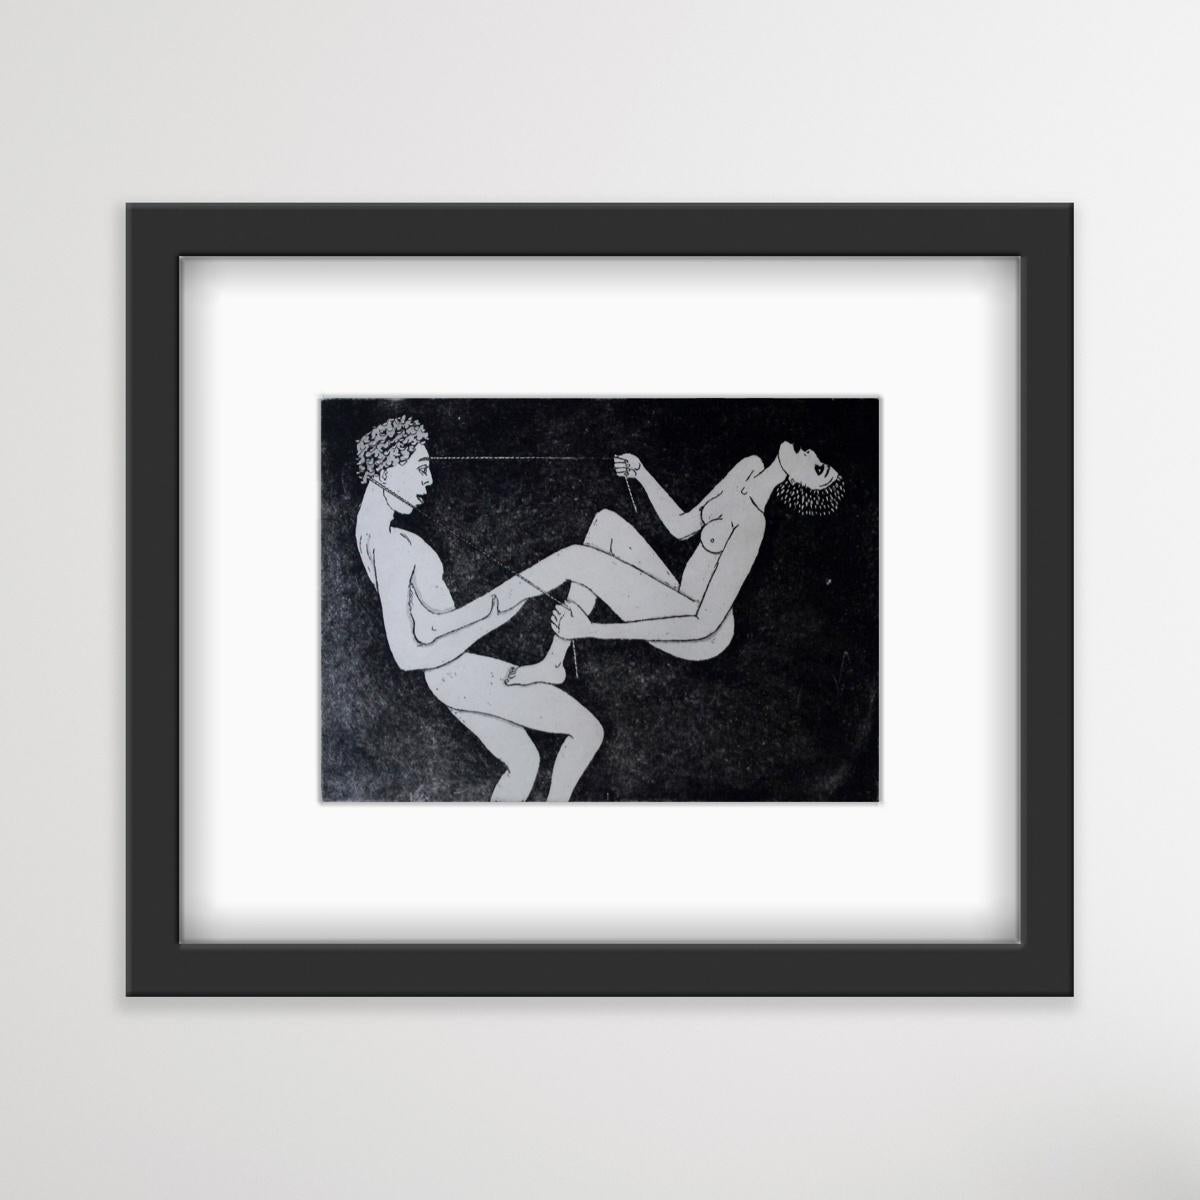 Climbing - XXI Century, Contemporary Figurative Etching Print, Nude - Black Figurative Print by Czeslaw Tumielewicz